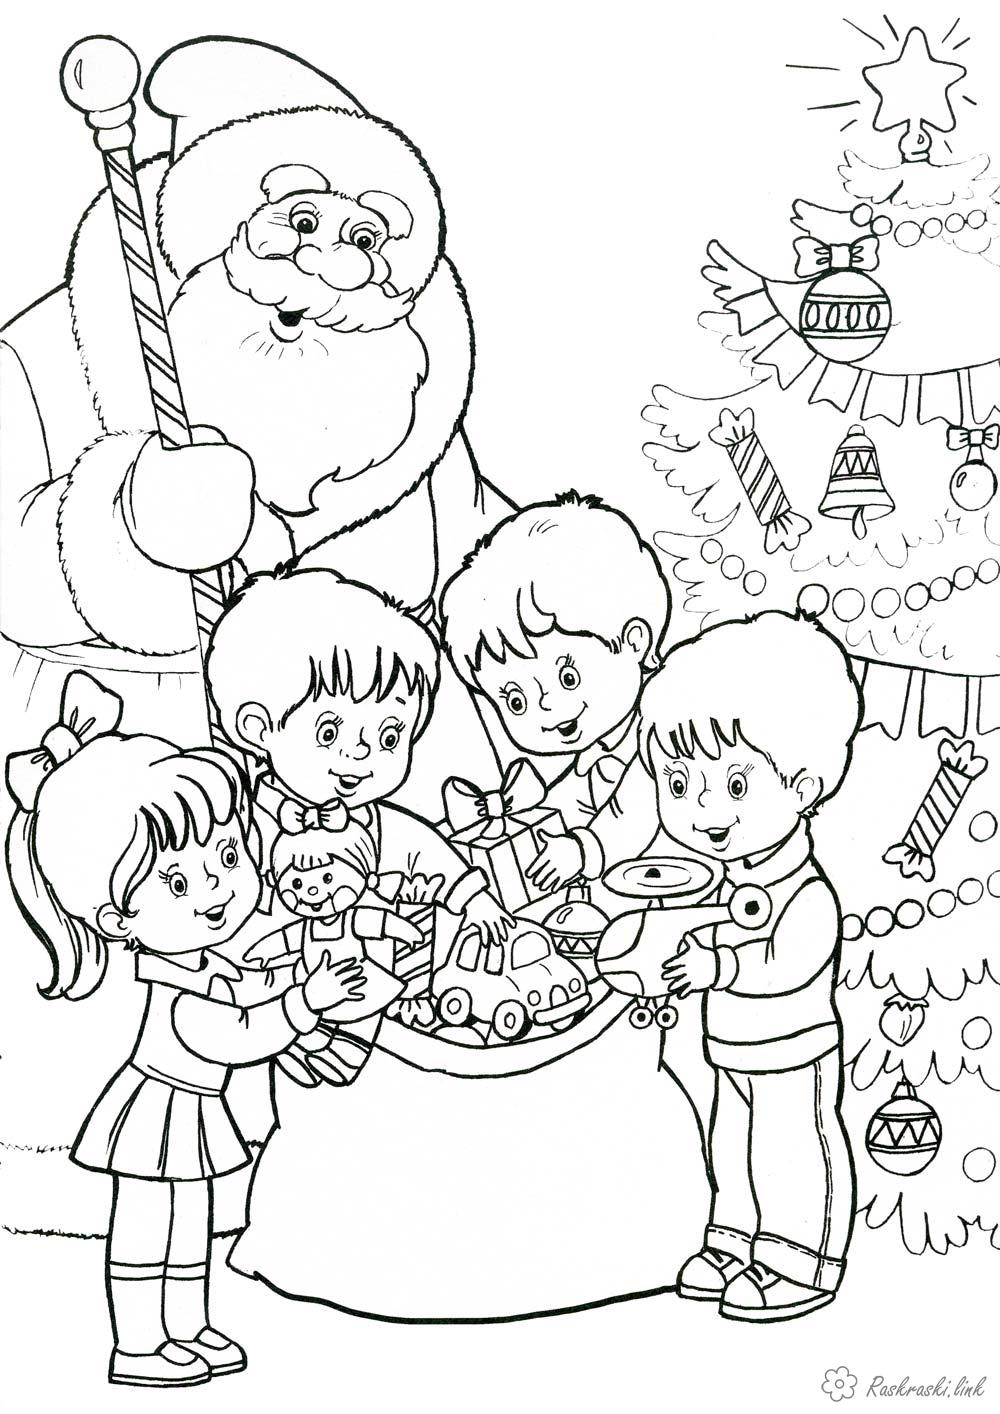 Розмальовки подарунки Дитяча новорічна раскарска Дід Мороз і дітлахи, що розбирають подарунки